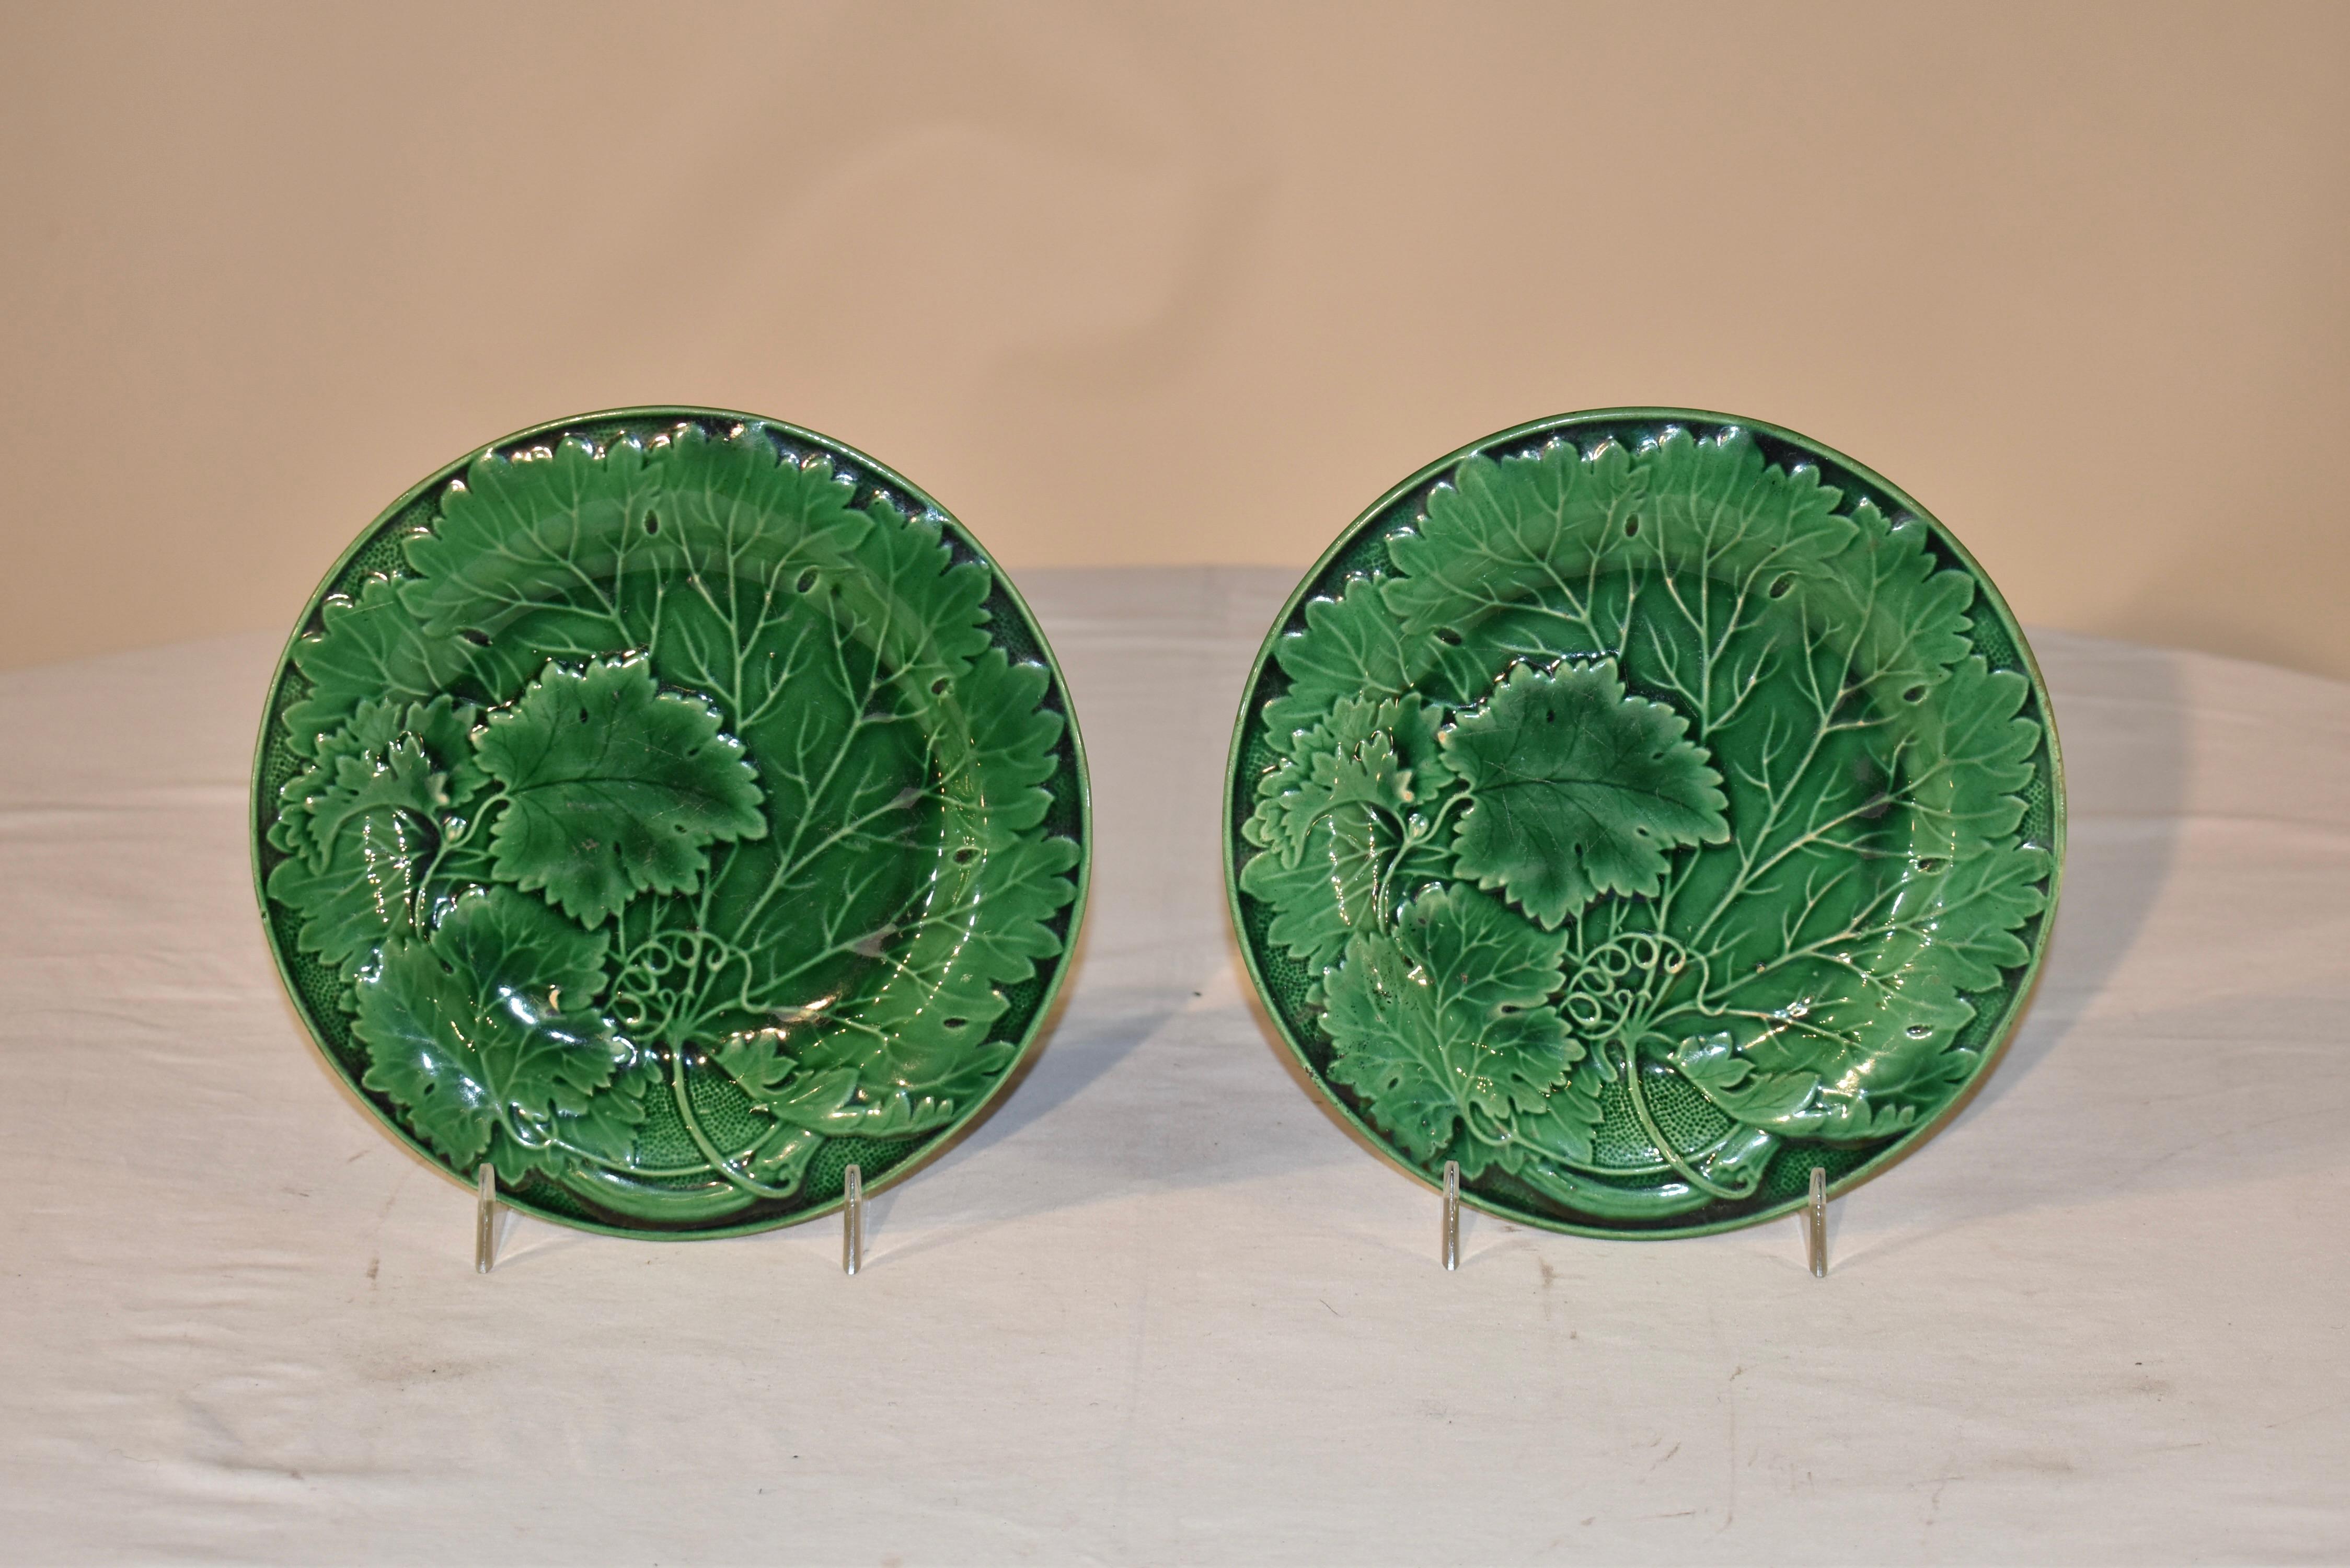 Paar schöne englische Majolikateller aus dem 19. Jahrhundert in Grün. Das Muster ist ein großes einzelnes Blatt mit kleineren Blättern, die sich überlappen und entlang eines geformten Randes gesprenkelt sind. Tellerständer nicht enthalten.